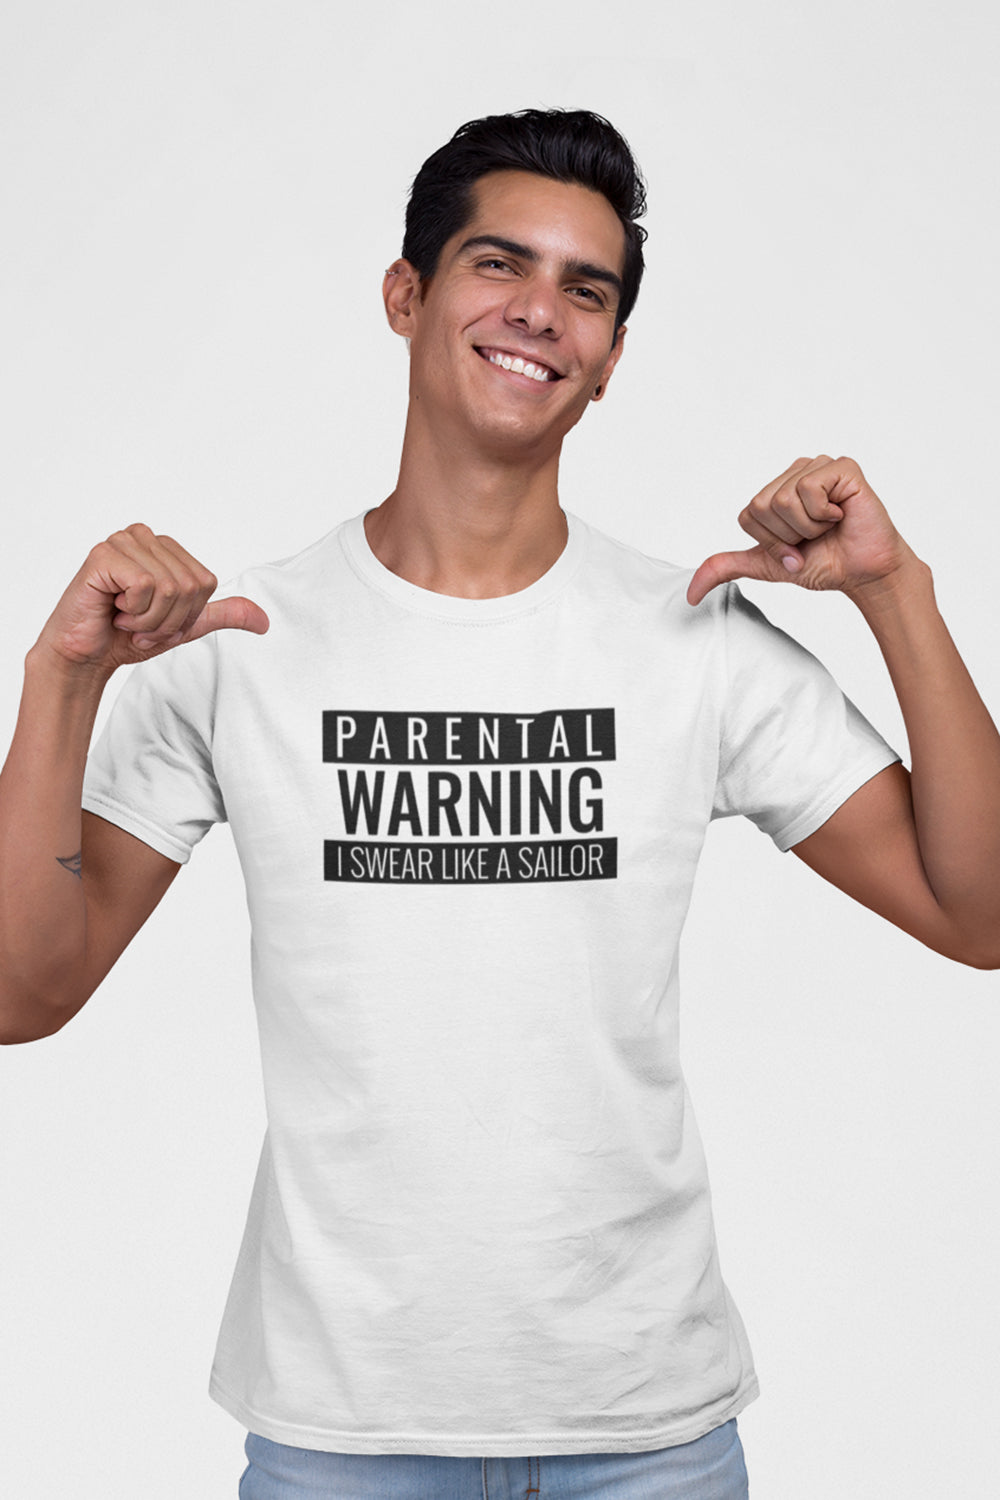 Parental Warning Graphic Printed White Tshirt